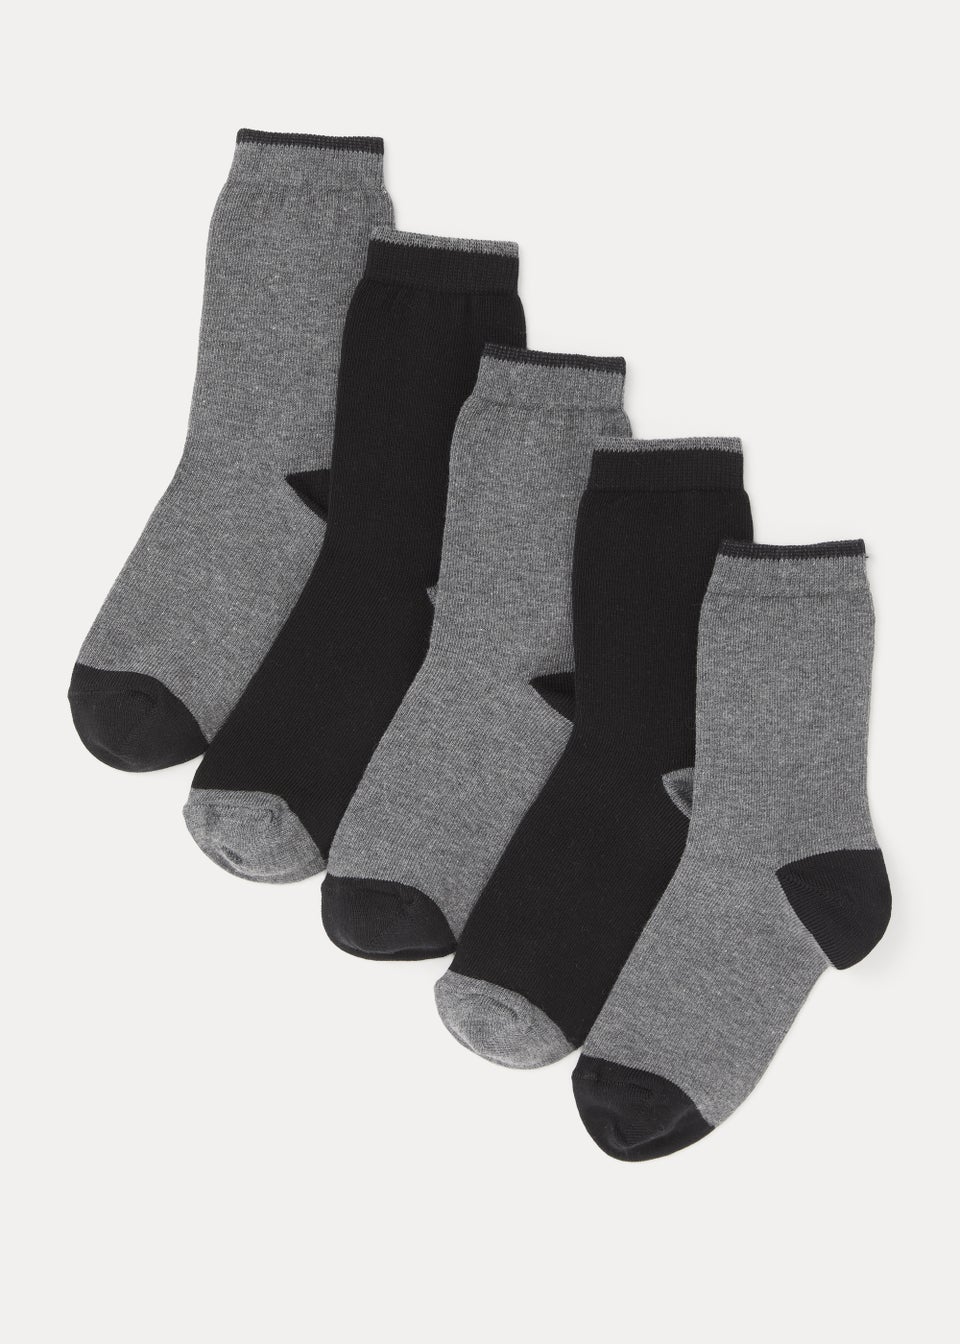 Kids 5 Pack Black Heel & Toe Socks (Younger 6-Older 6.5)